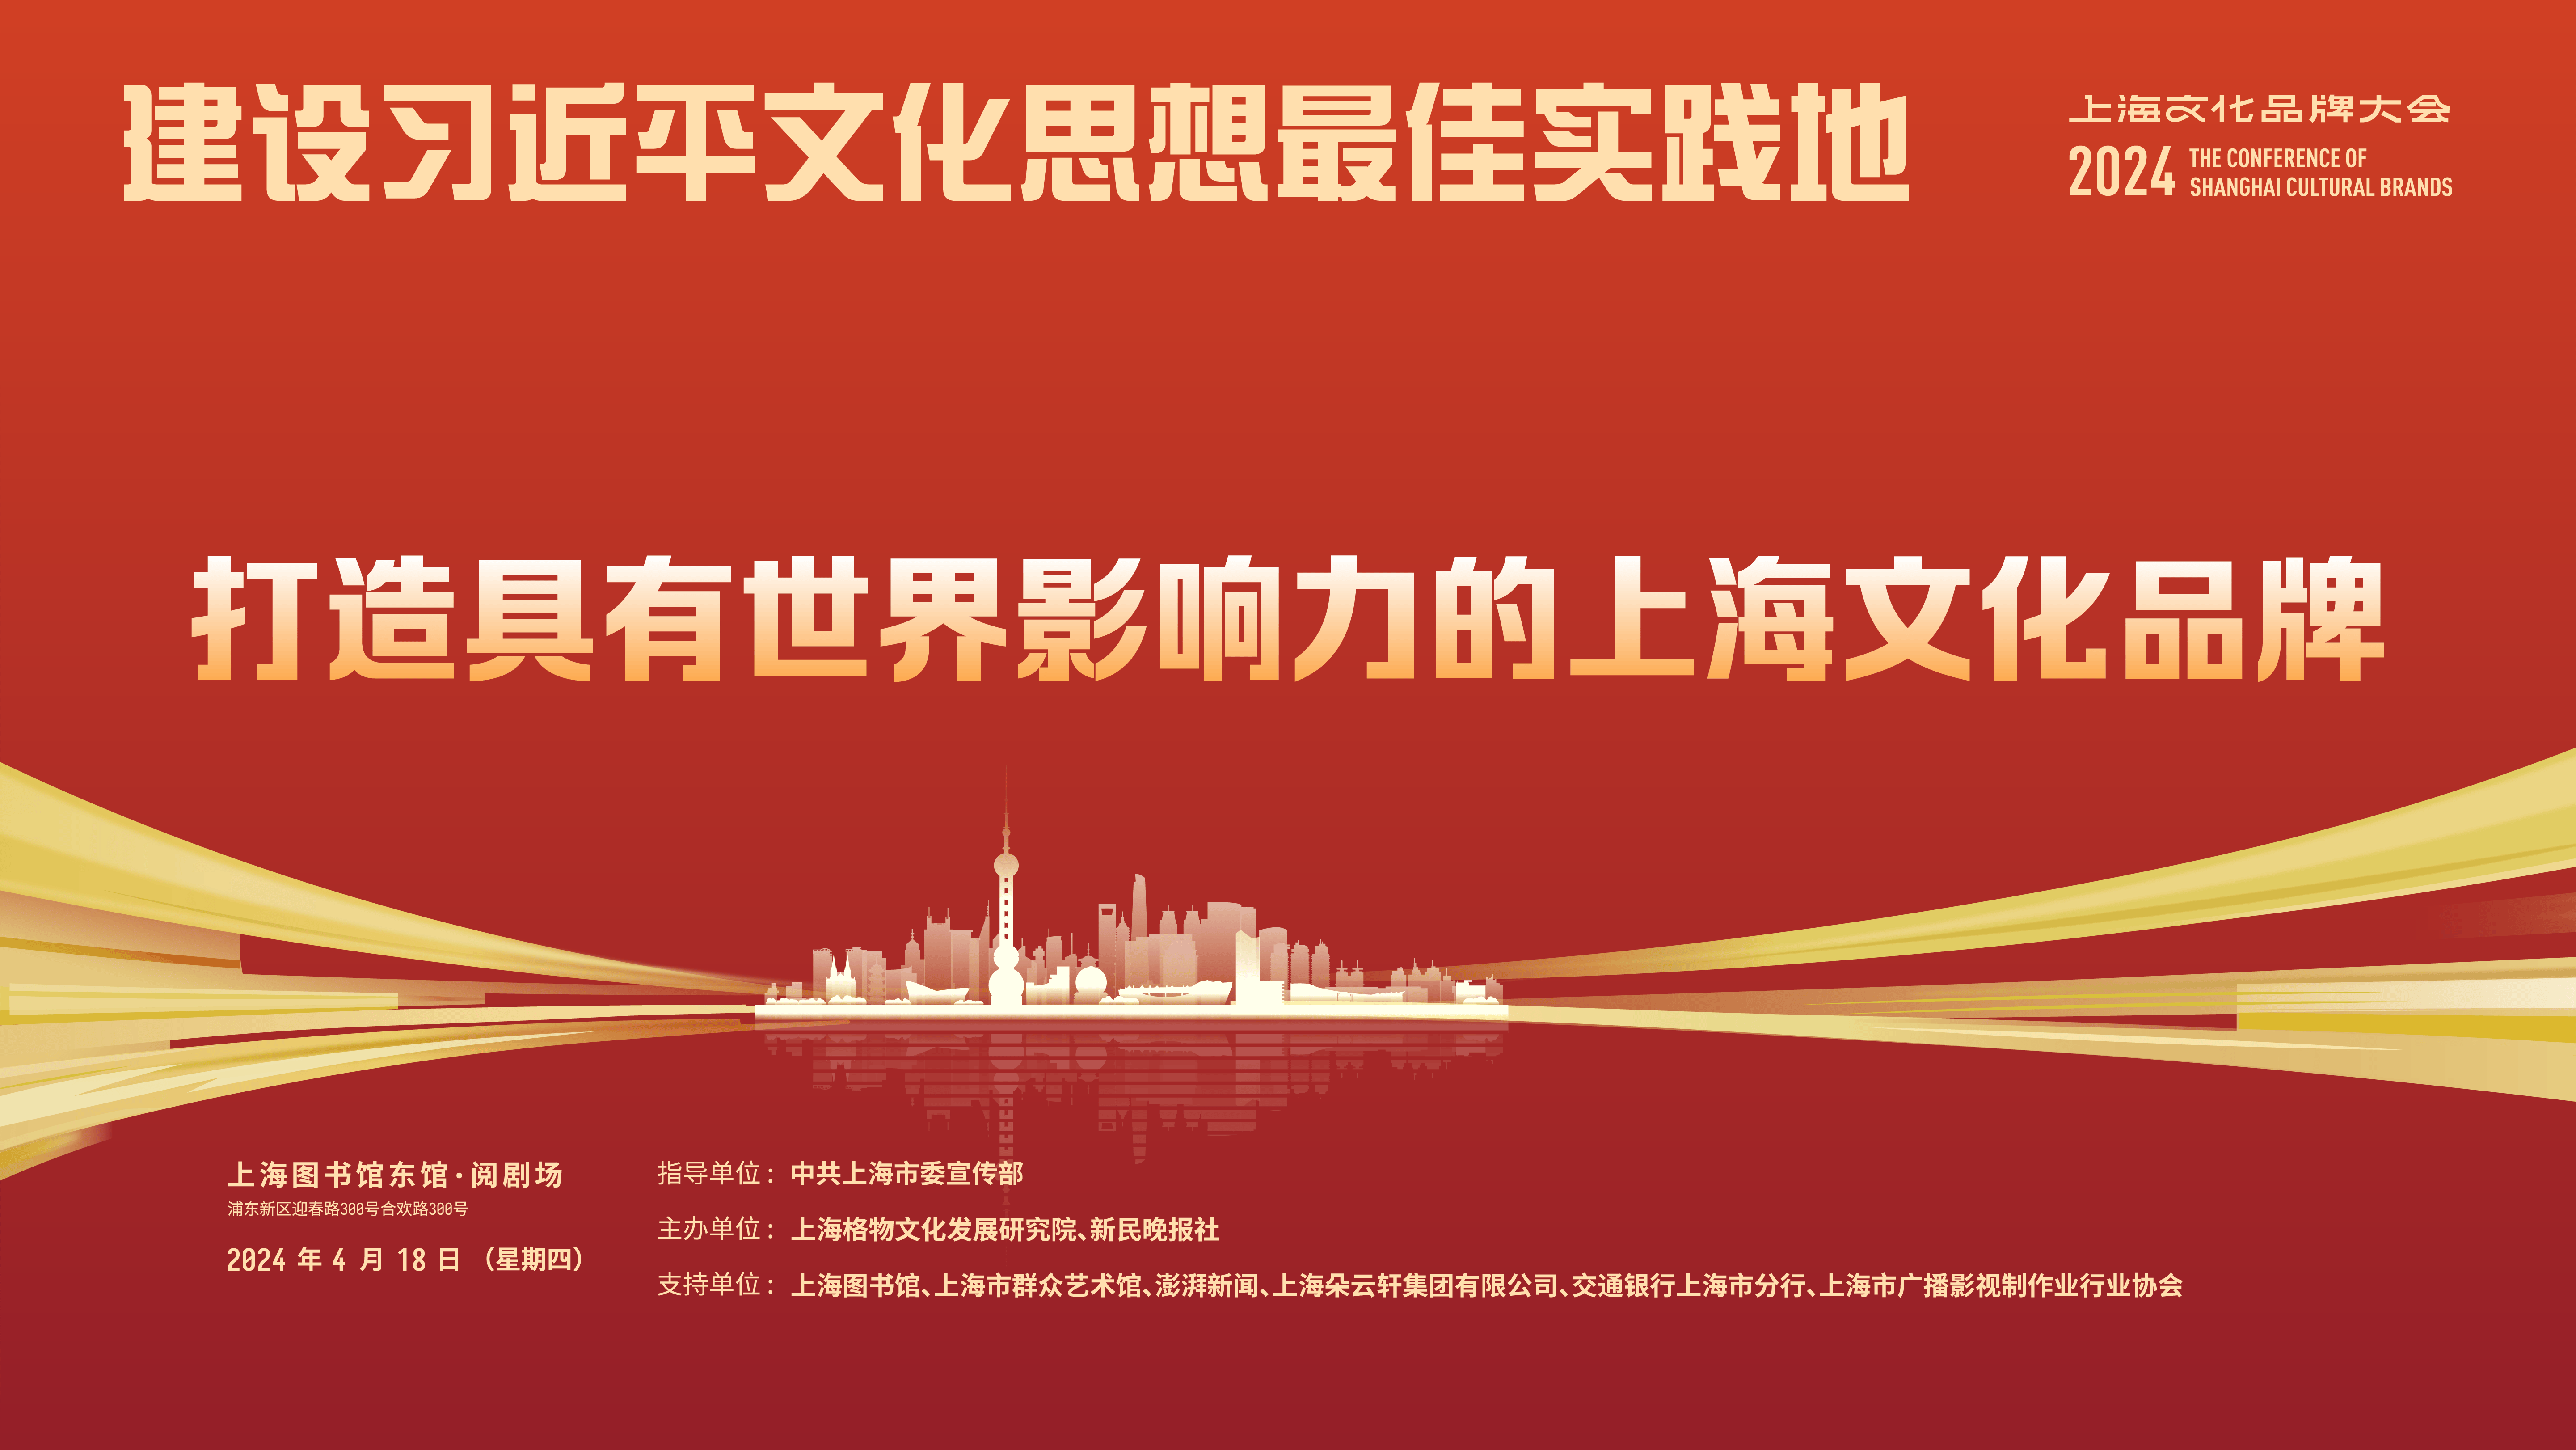 打响上海文化品牌最佳案例发布ipshanghai获最佳海外传播案例